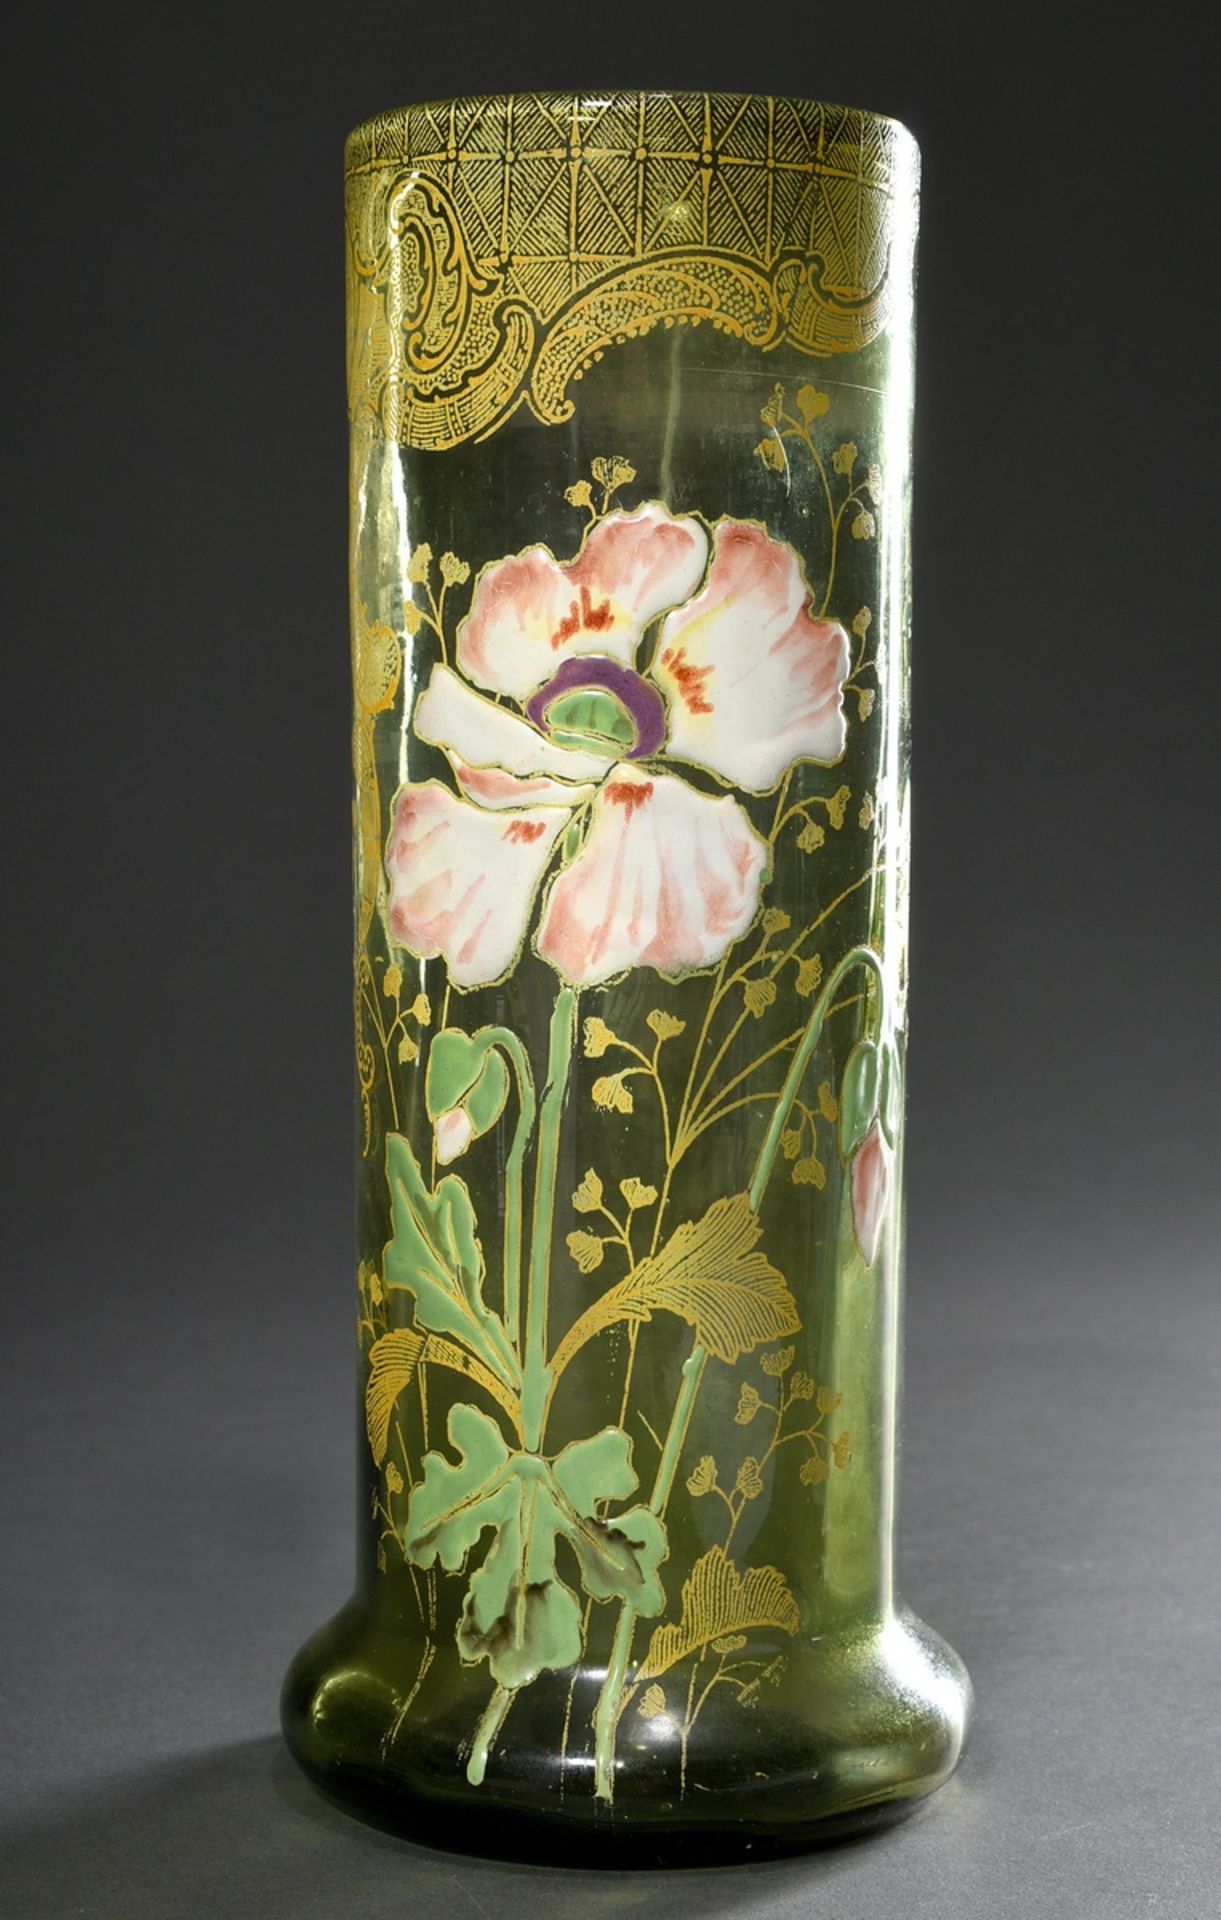 Jugendstil Vase mit floralem Dekor "Mohnblüte" in polychromer Emaillemalerei über gedrucktem Goldde